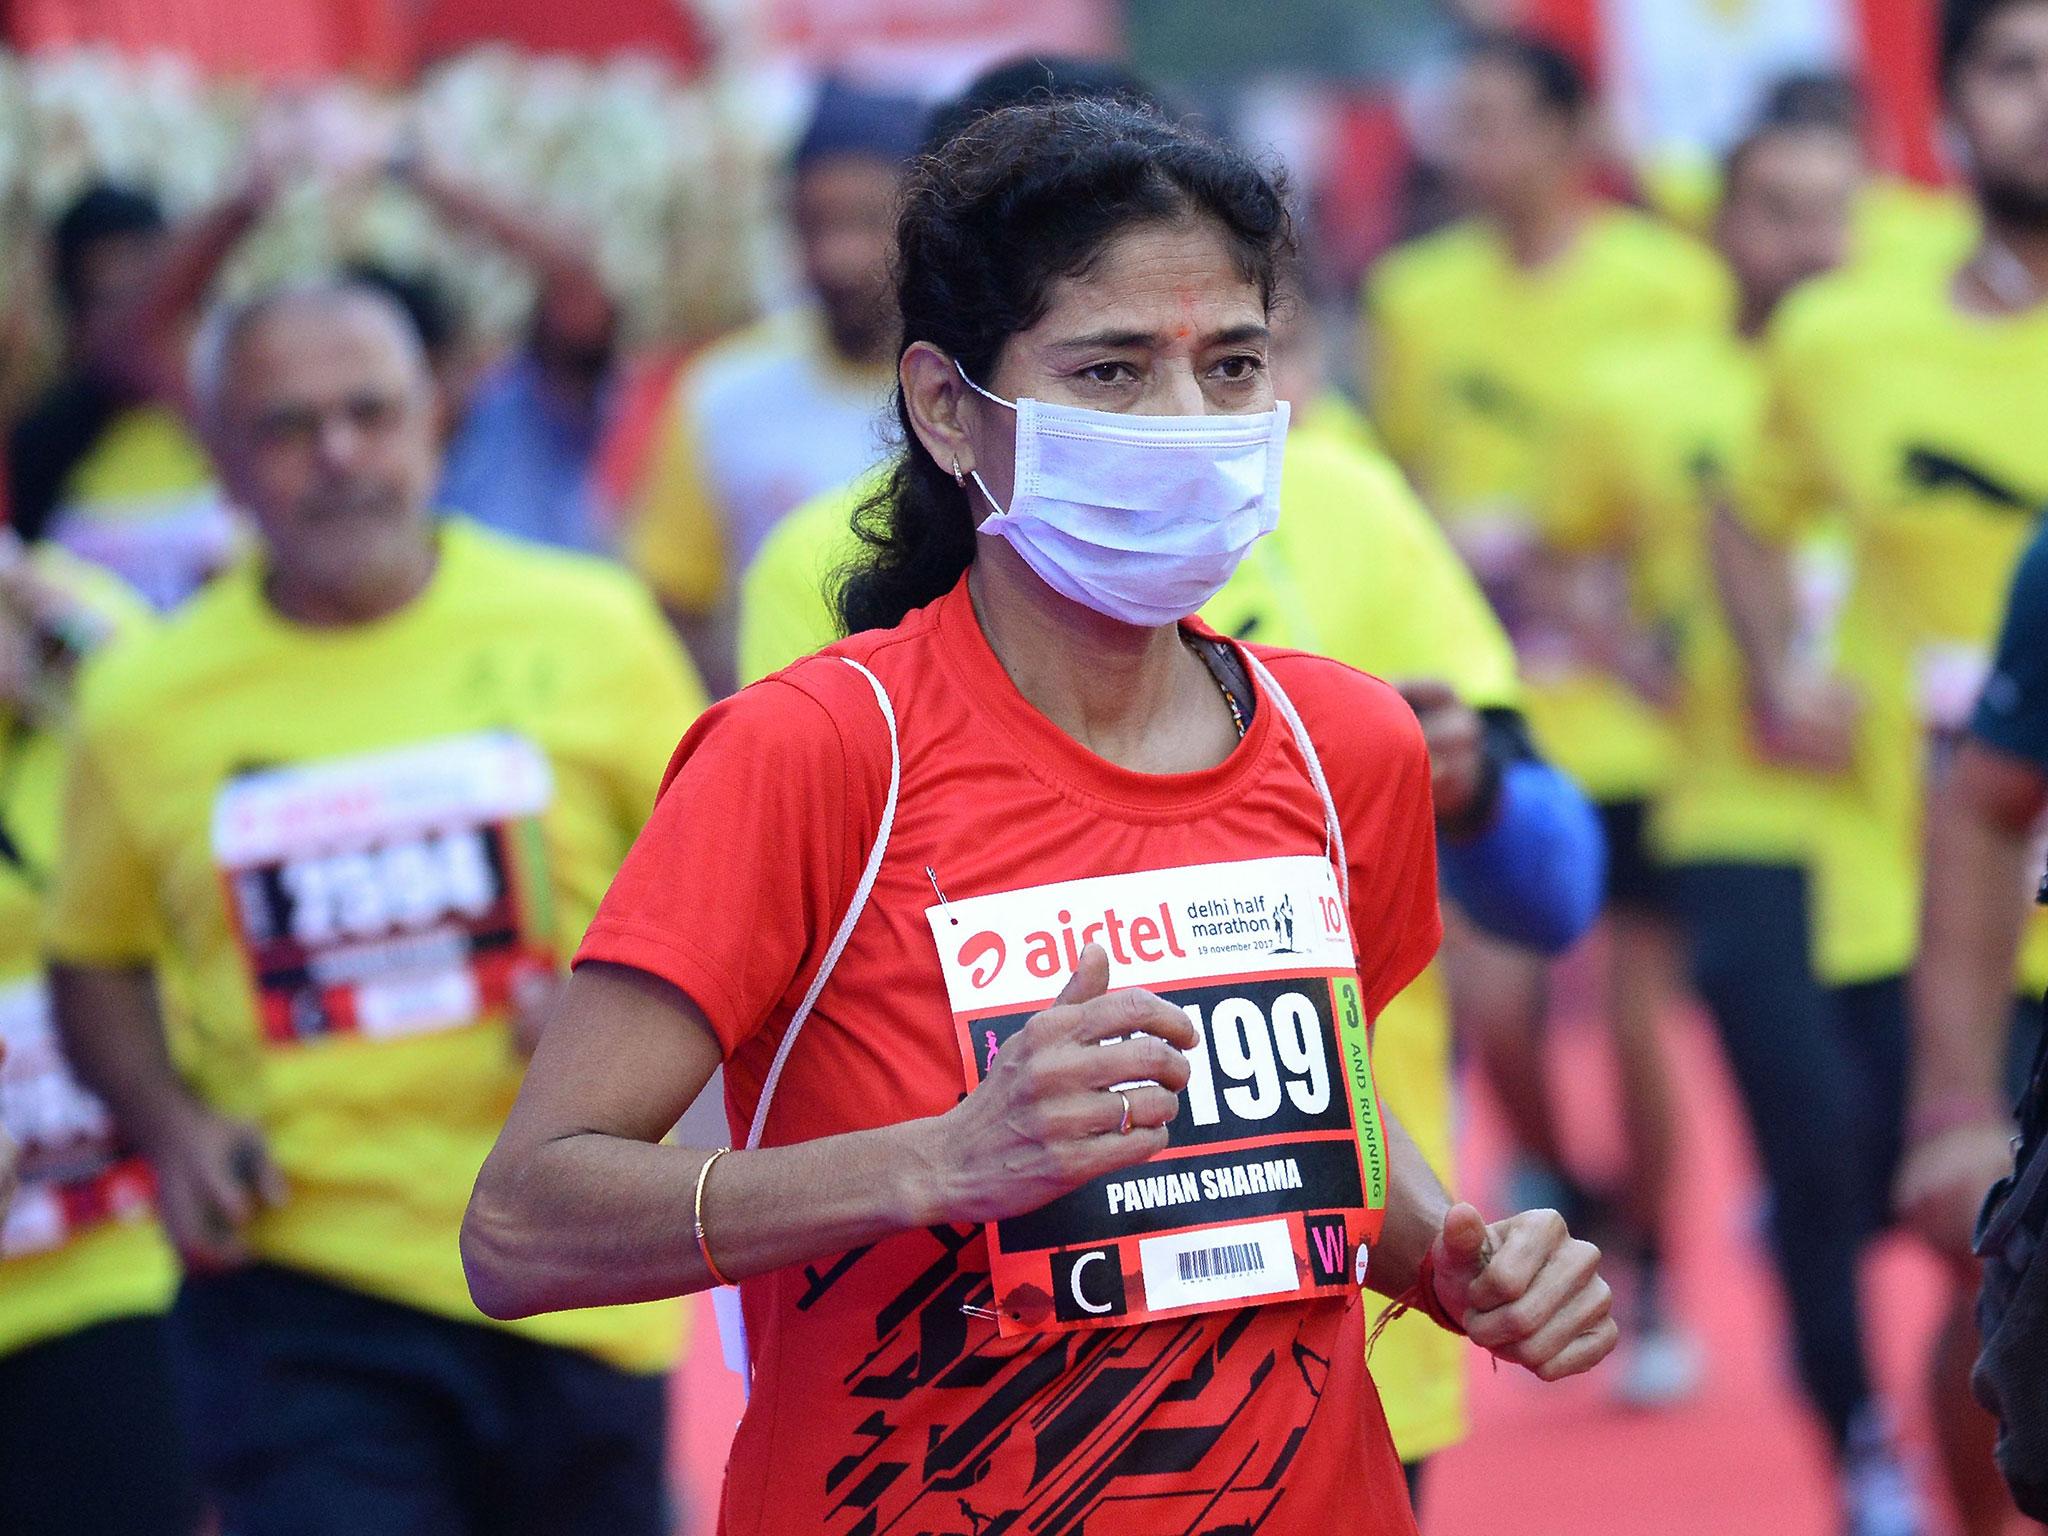 &#13;
A woman wears a face mask as she takes part in the Airtel Delhi Half Marathon 2017 &#13;